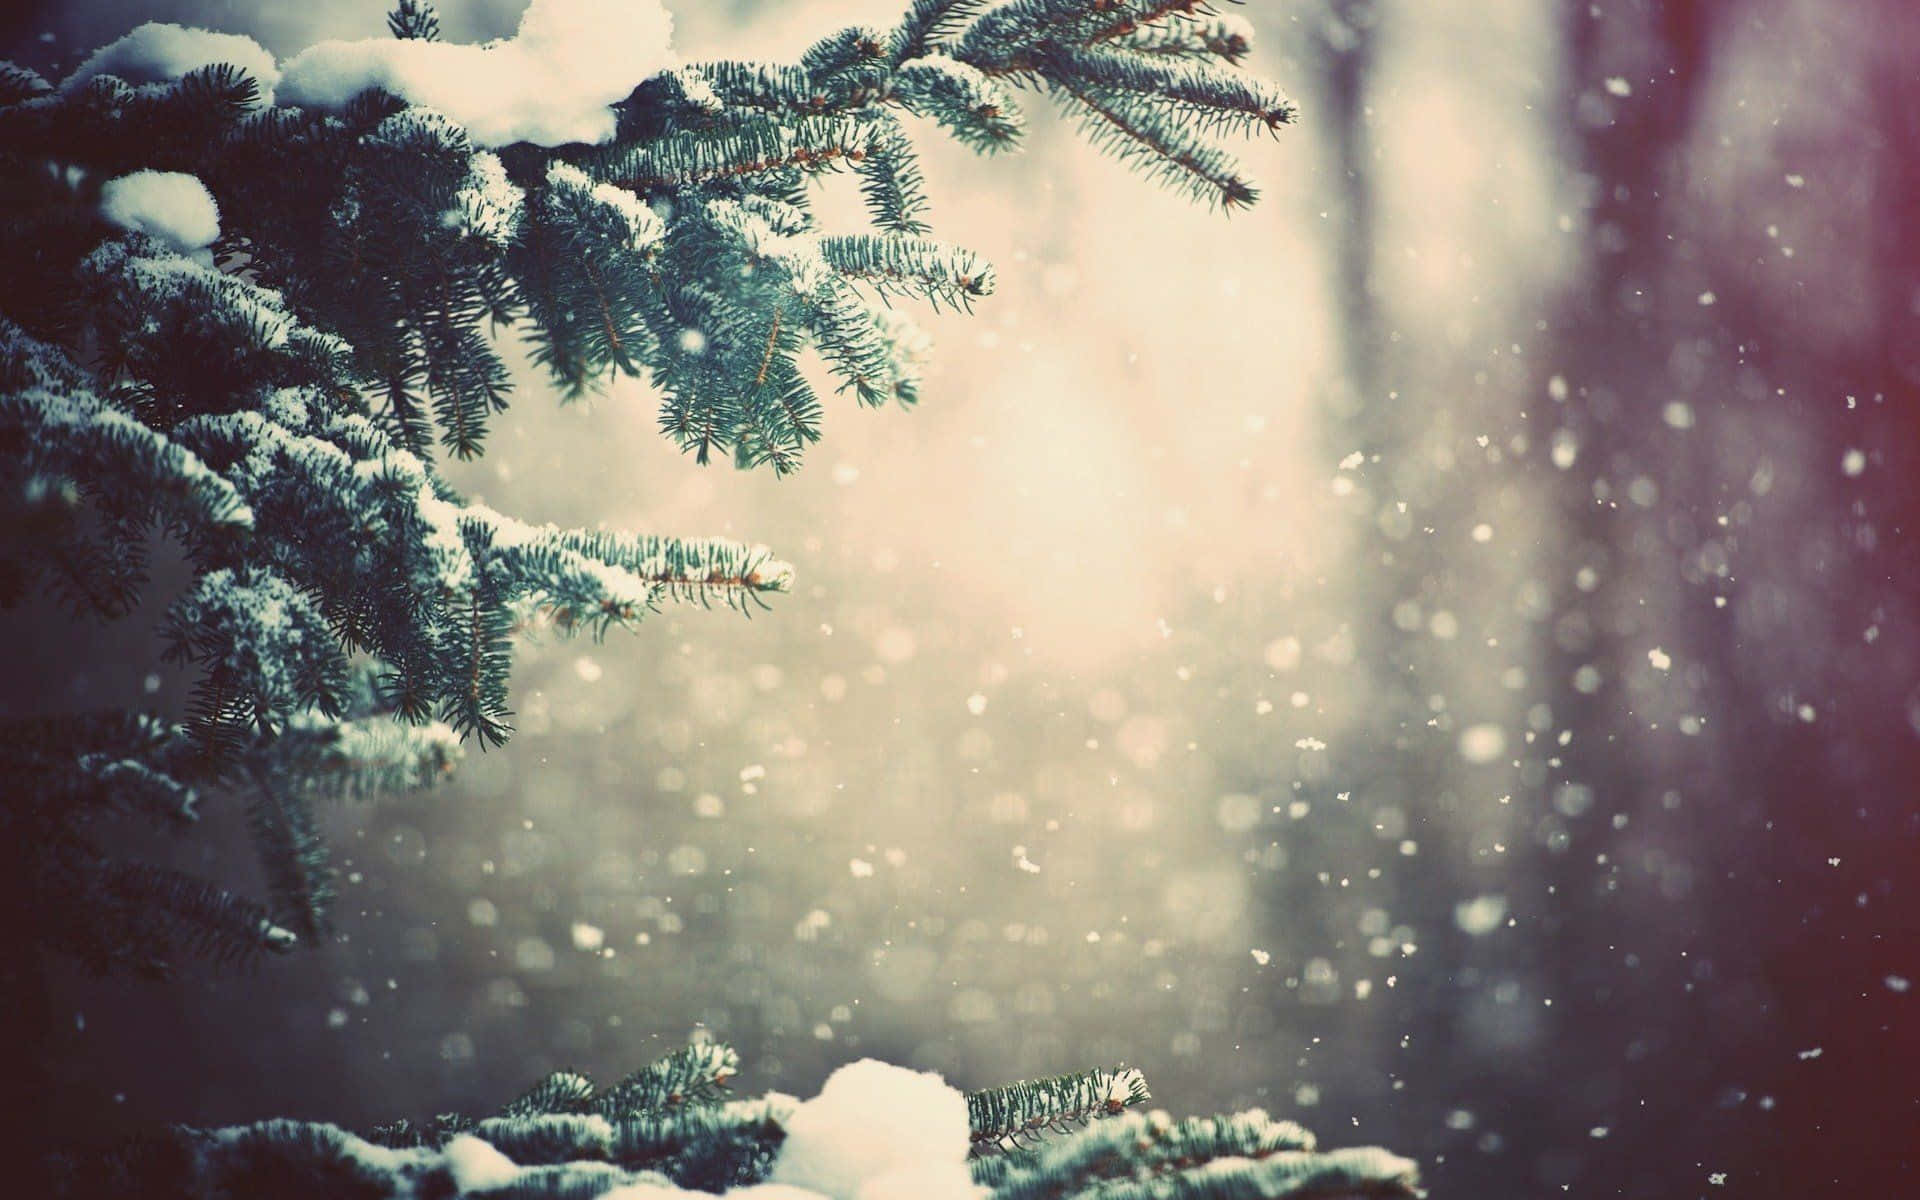 Majestic Winter Trees in a Snowy Landscape Wallpaper